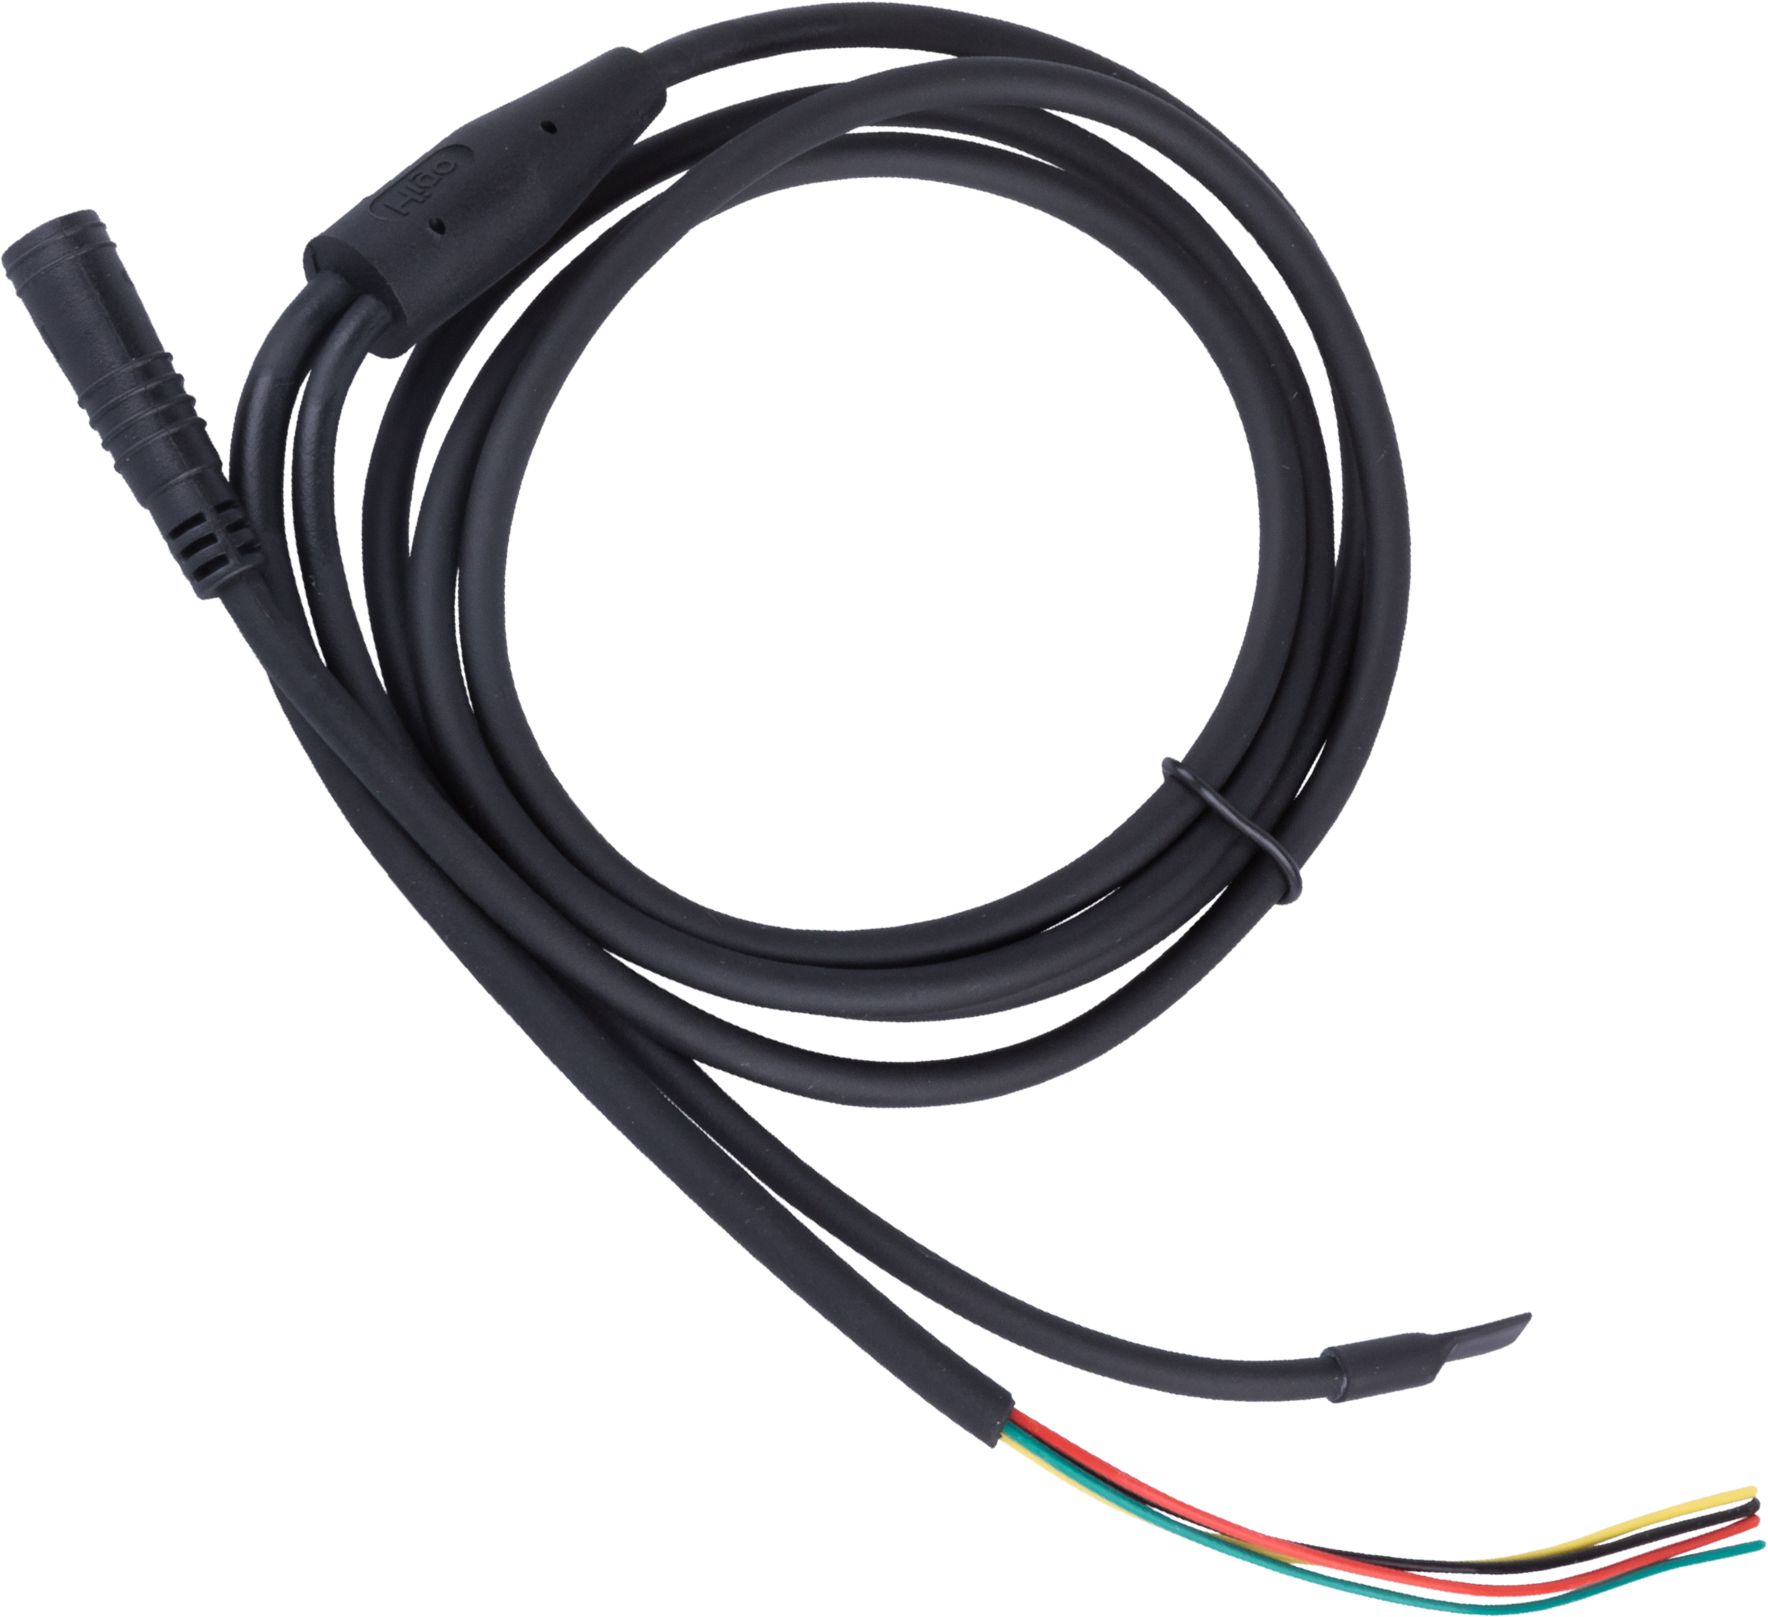 Y-Kabel für M99 Tail Light an M99 Pro schwarz